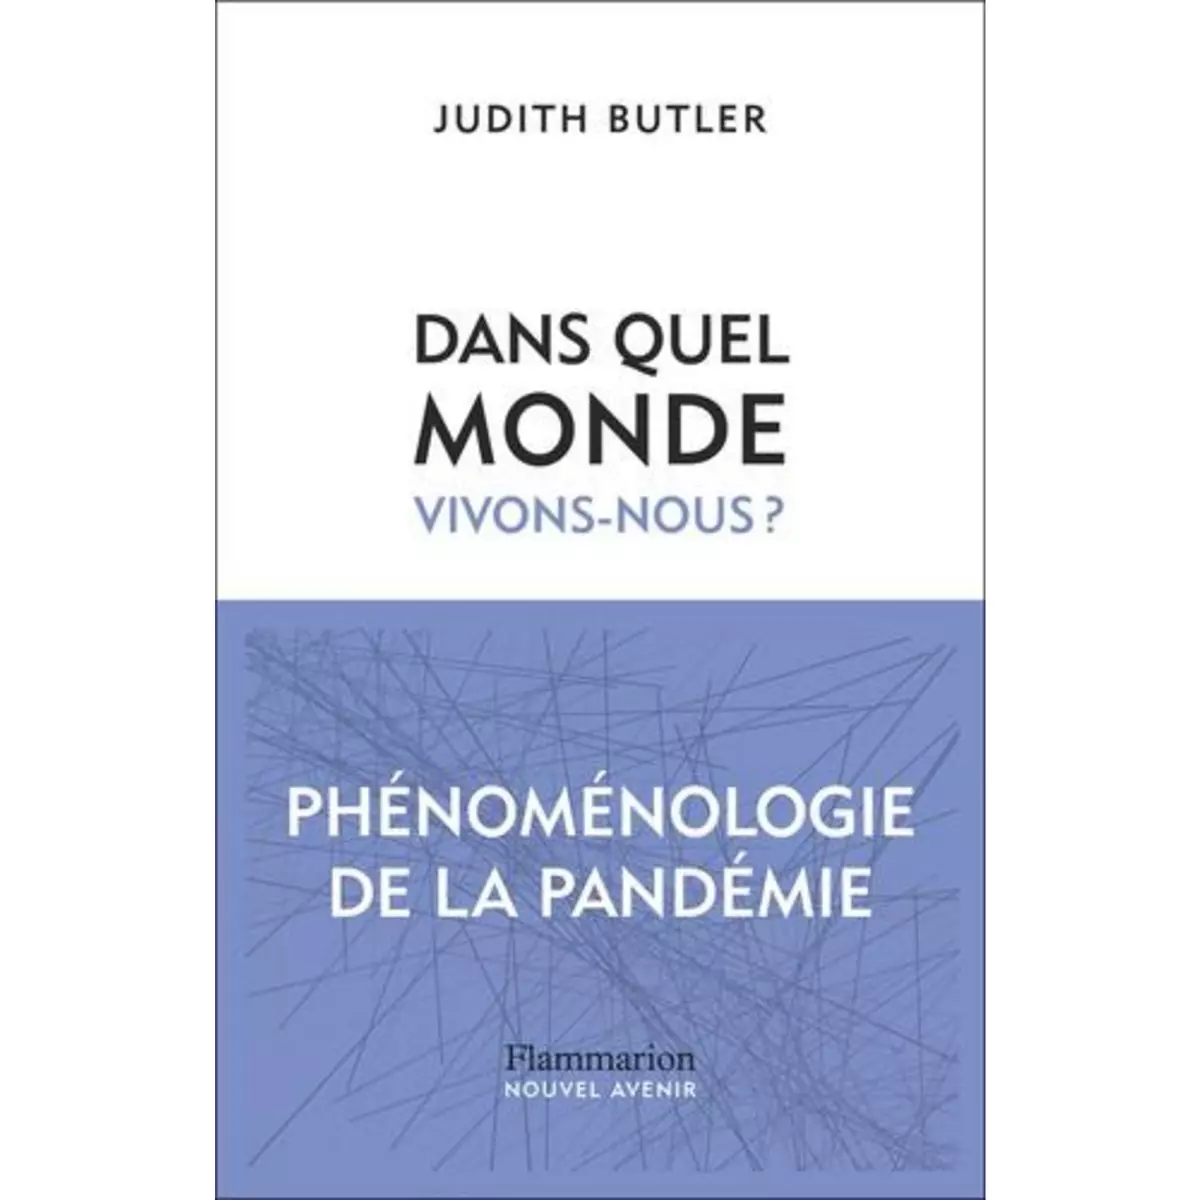  DANS QUEL MONDE VIVONS-NOUS ?. PHENOMENOLOGIE DE LA PANDEMIE, Butler Judith